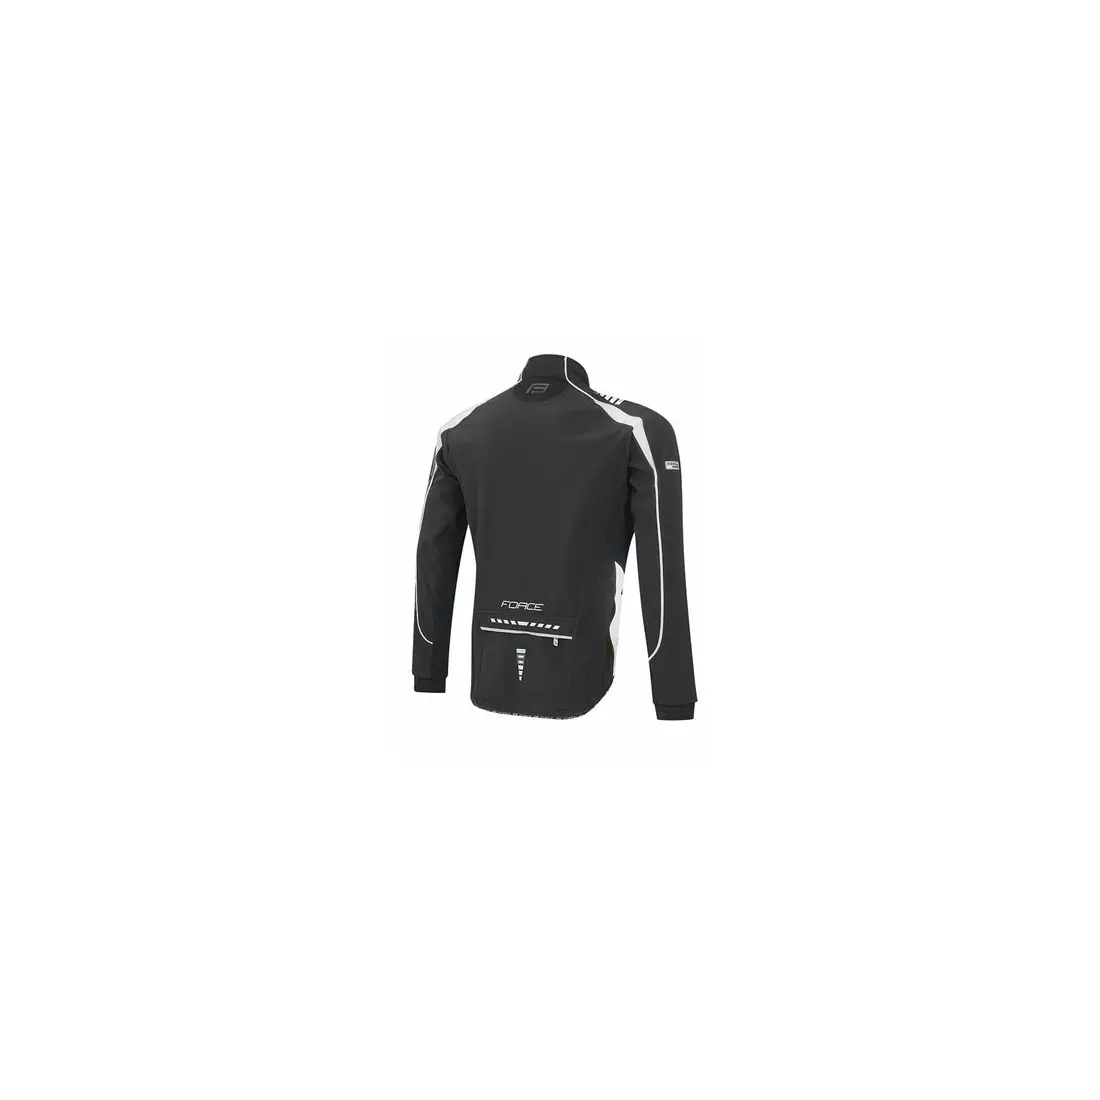 FORCE X72 férfi softshell kerékpáros kabát fekete-fehér 89992